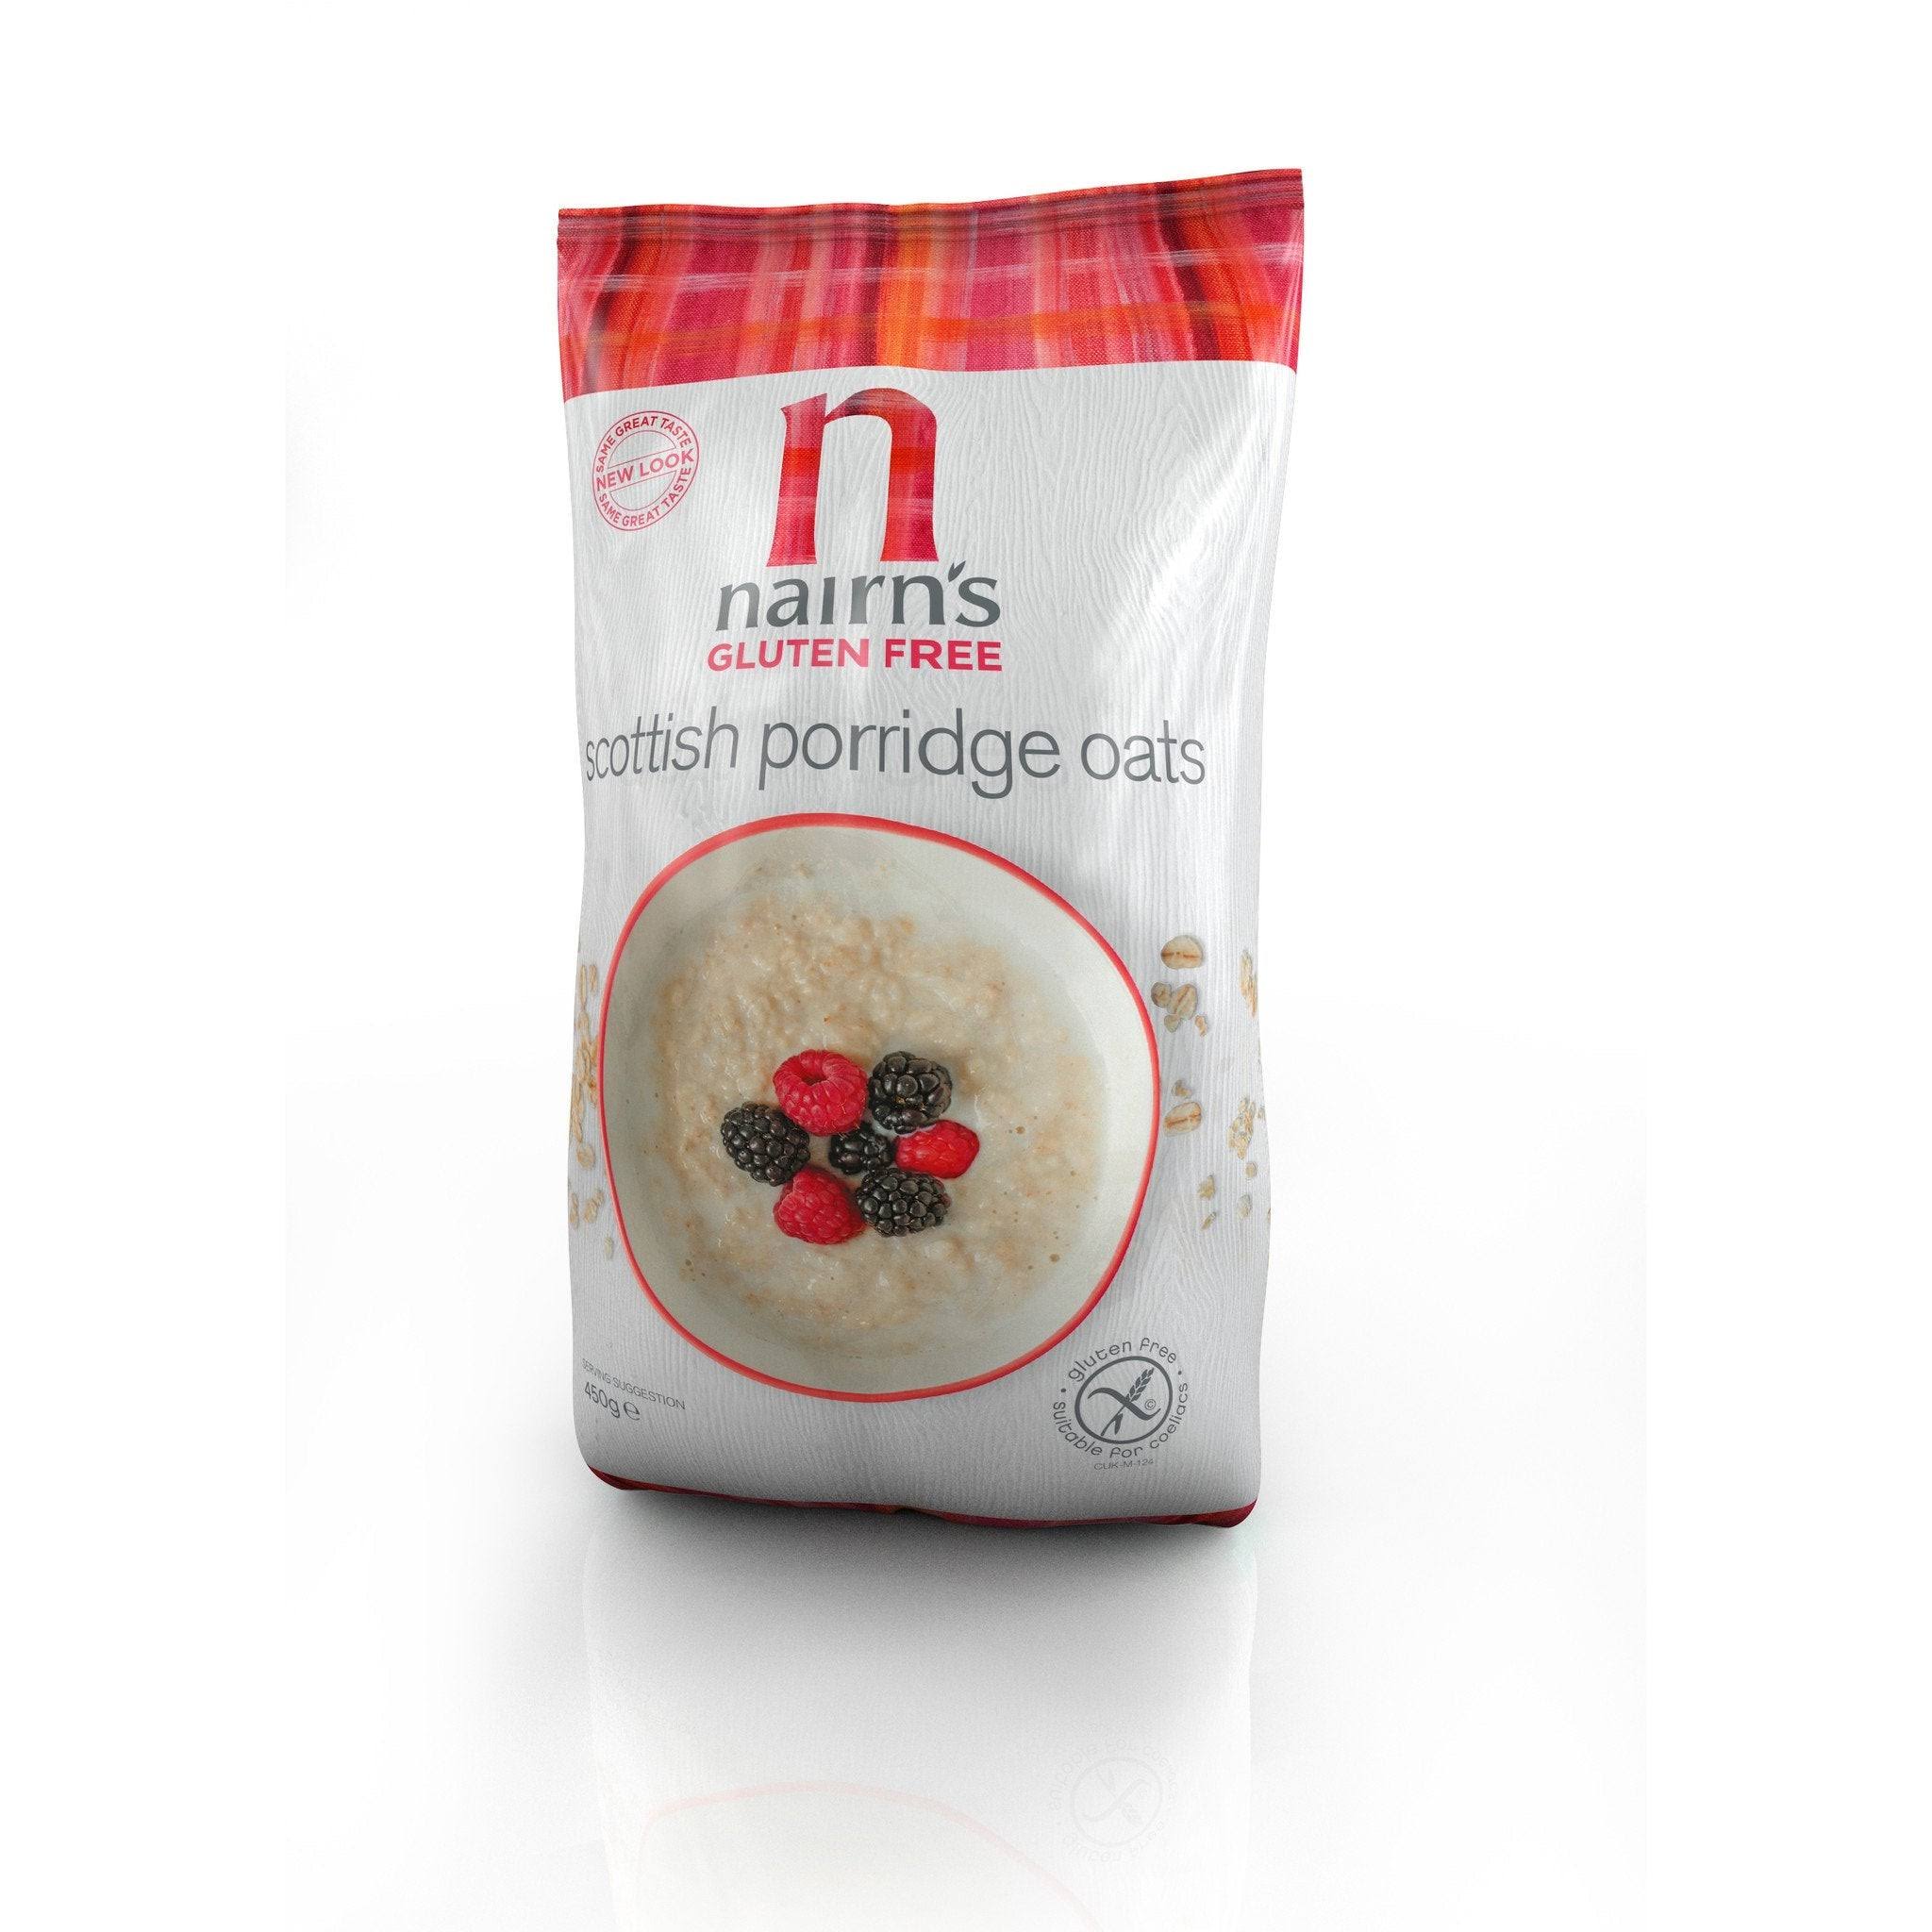 Nairn's Scottish Porridge Oats - Gluten Free, 450g